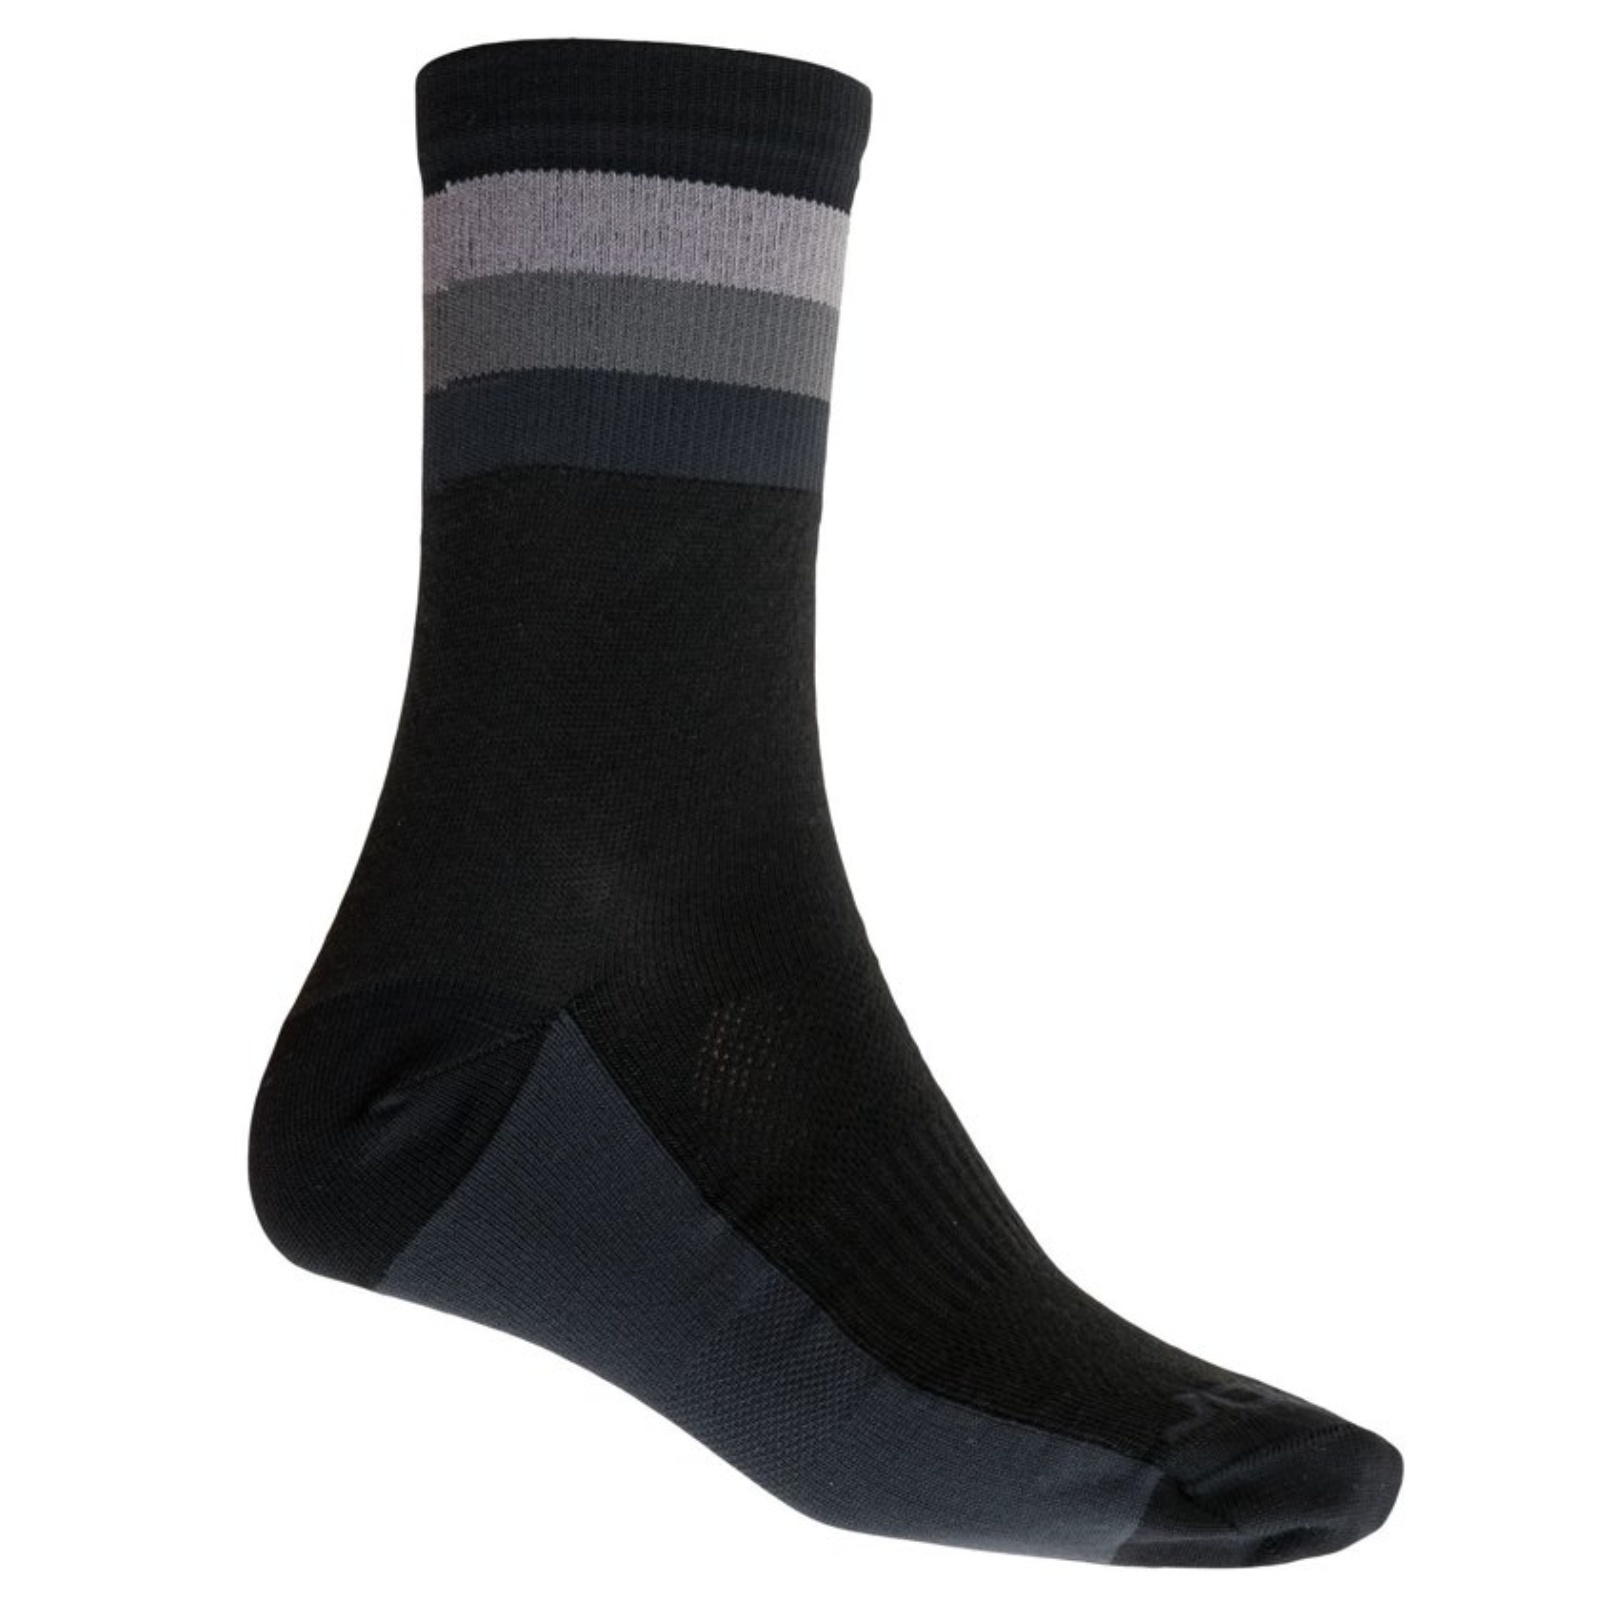  Sensor ponožky COOLMAX SUMMER STRIPE černo-šedé